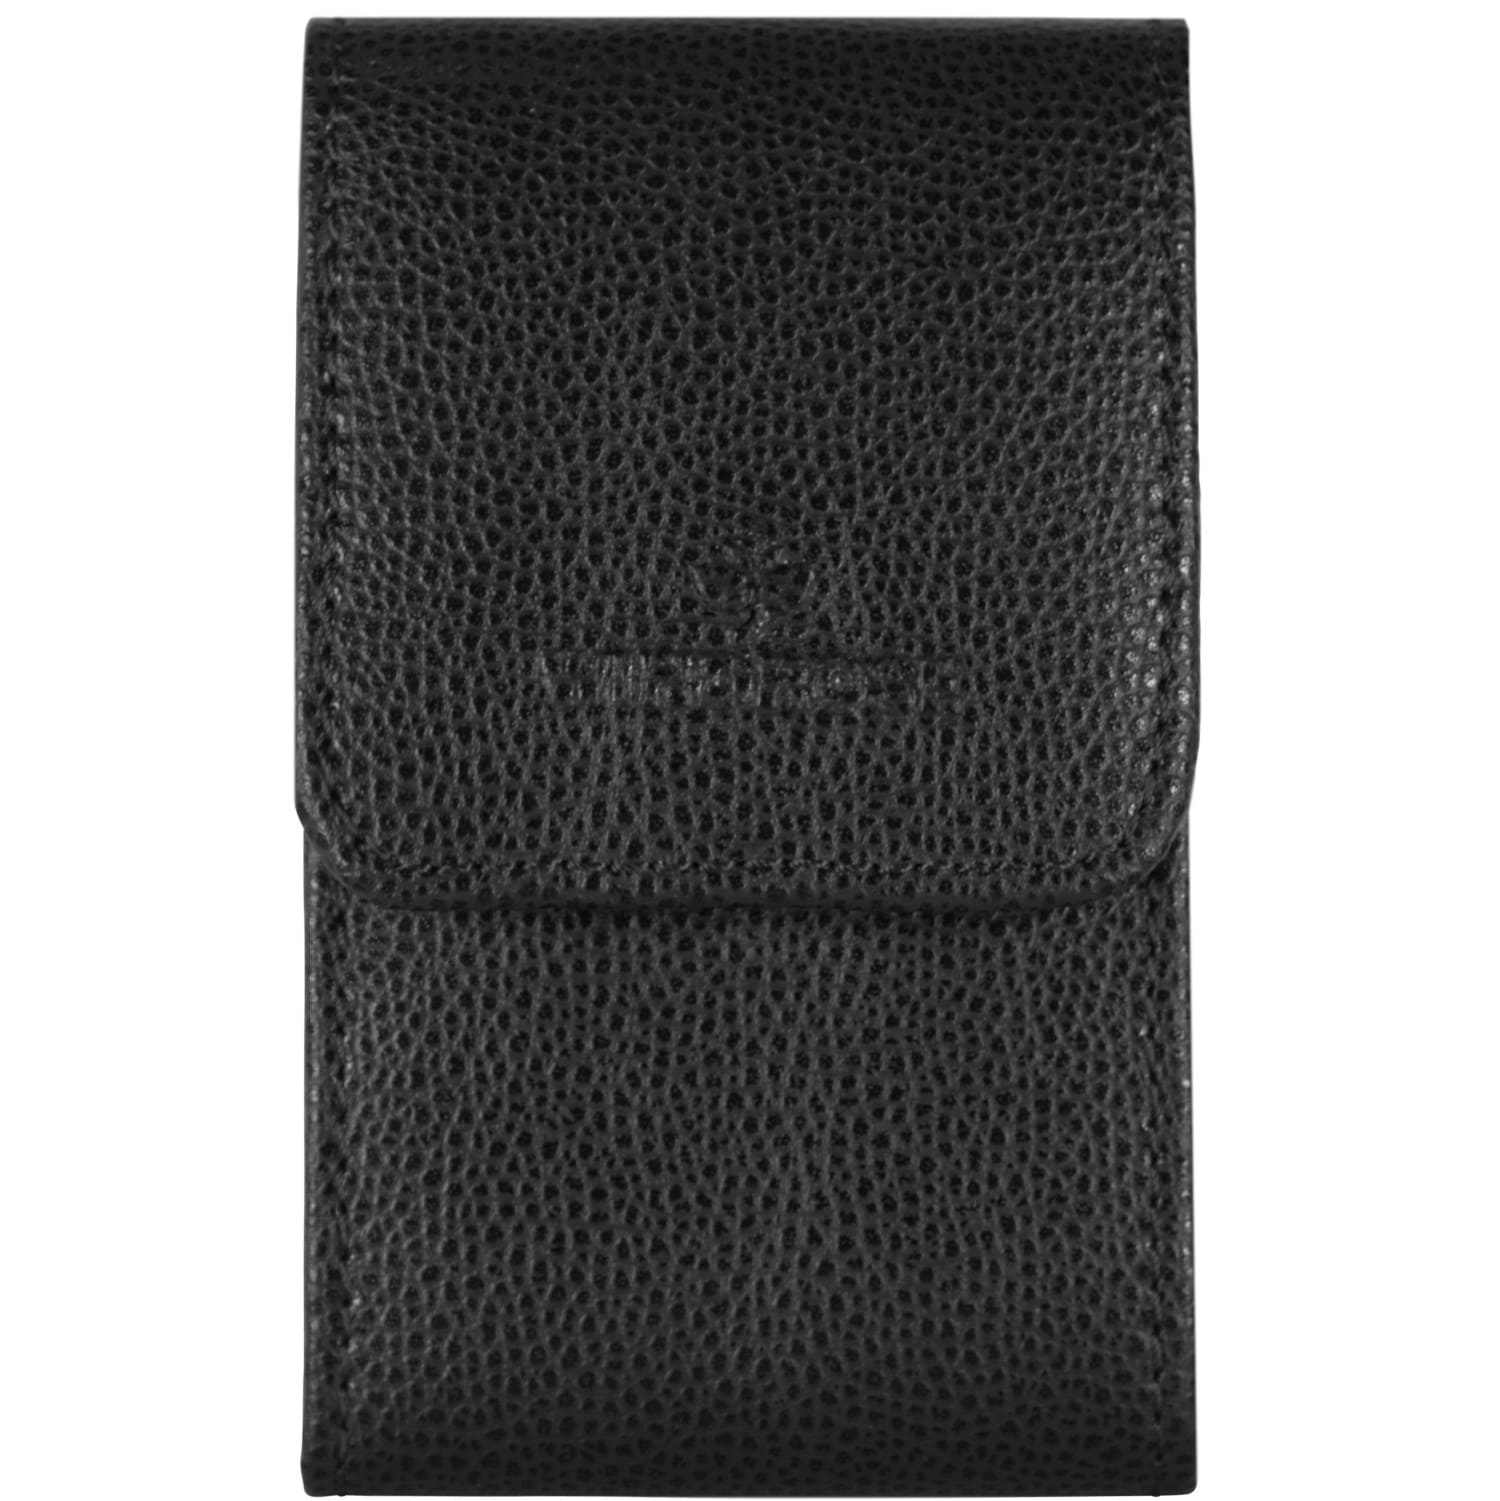 Windrose Beluga Manicure-Case 6.5 cm leather, black